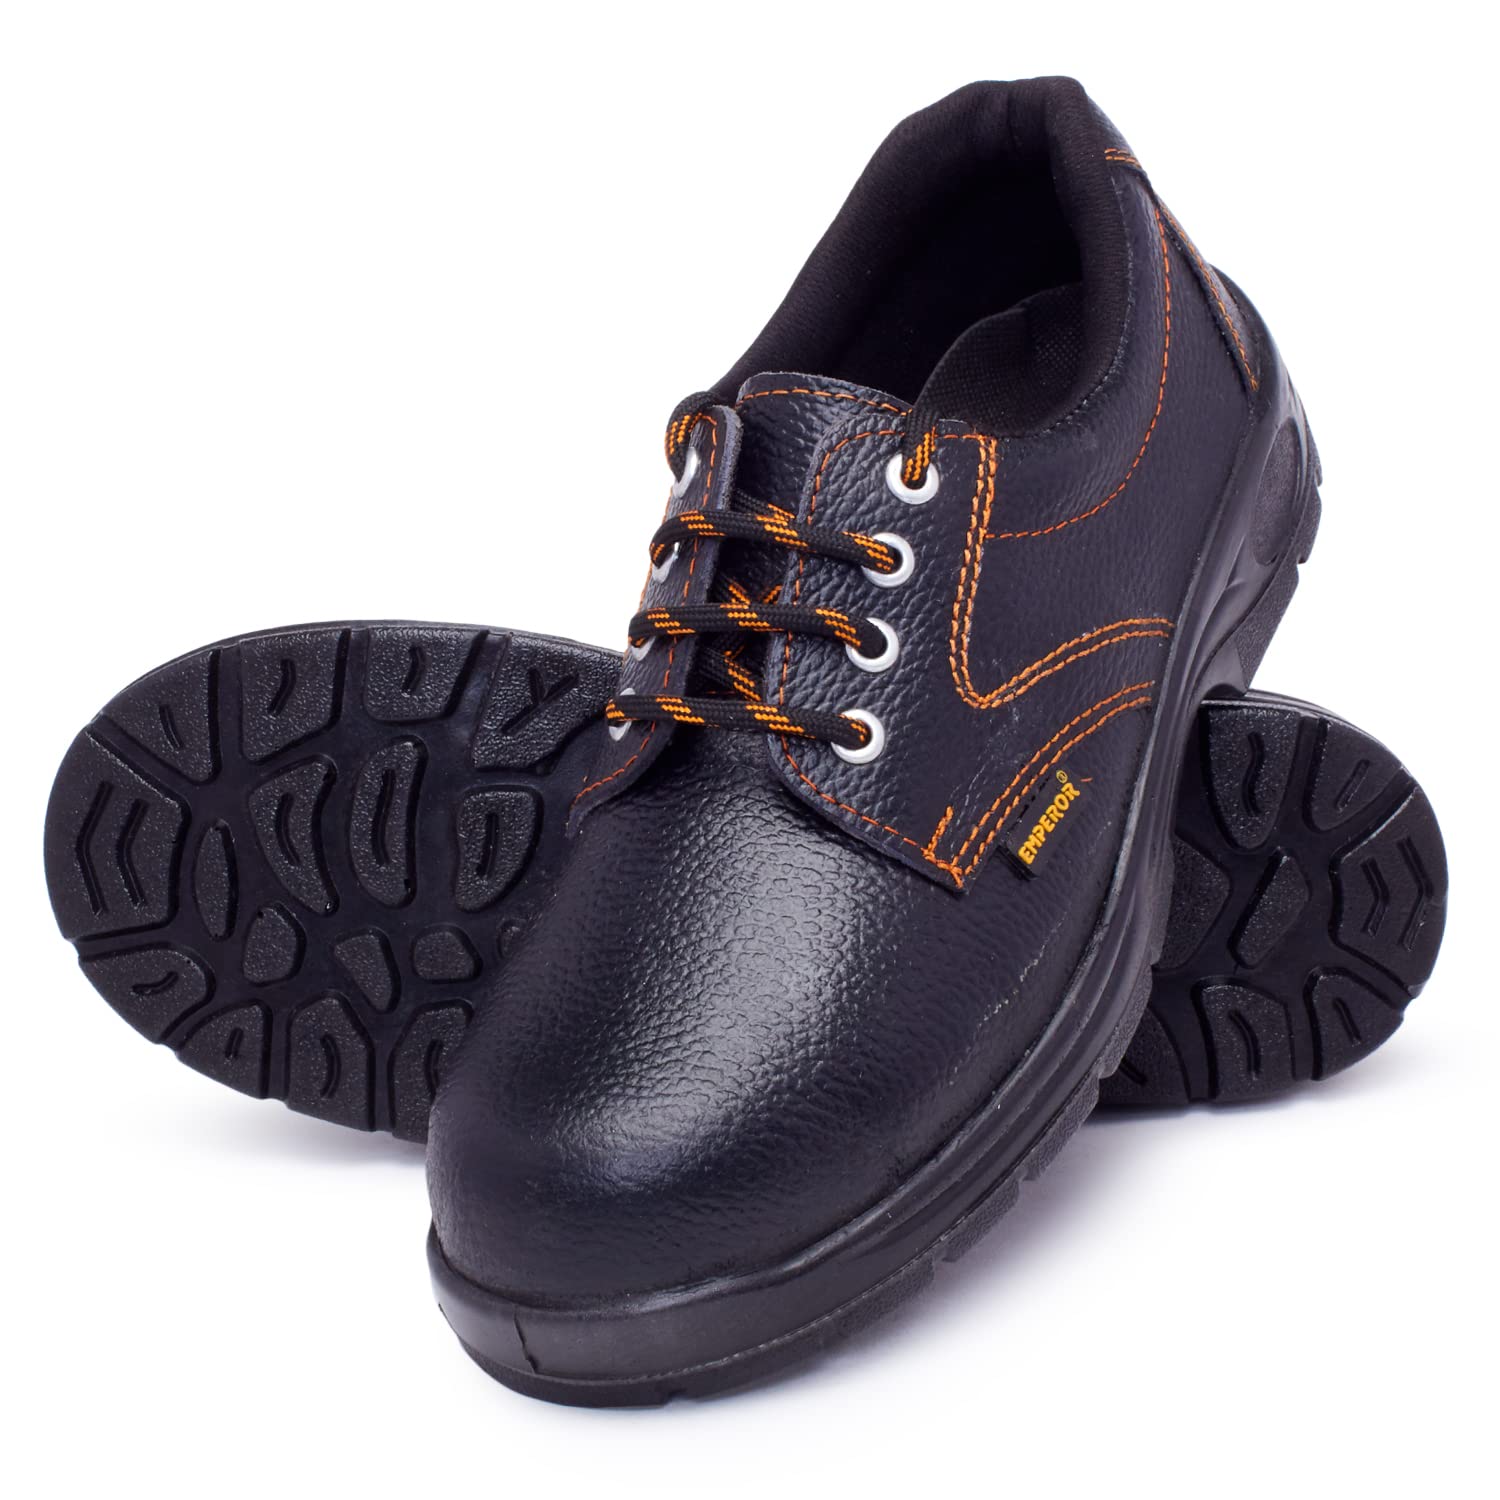 Emperor Steel Toe Leather Safety Shoe WINNER